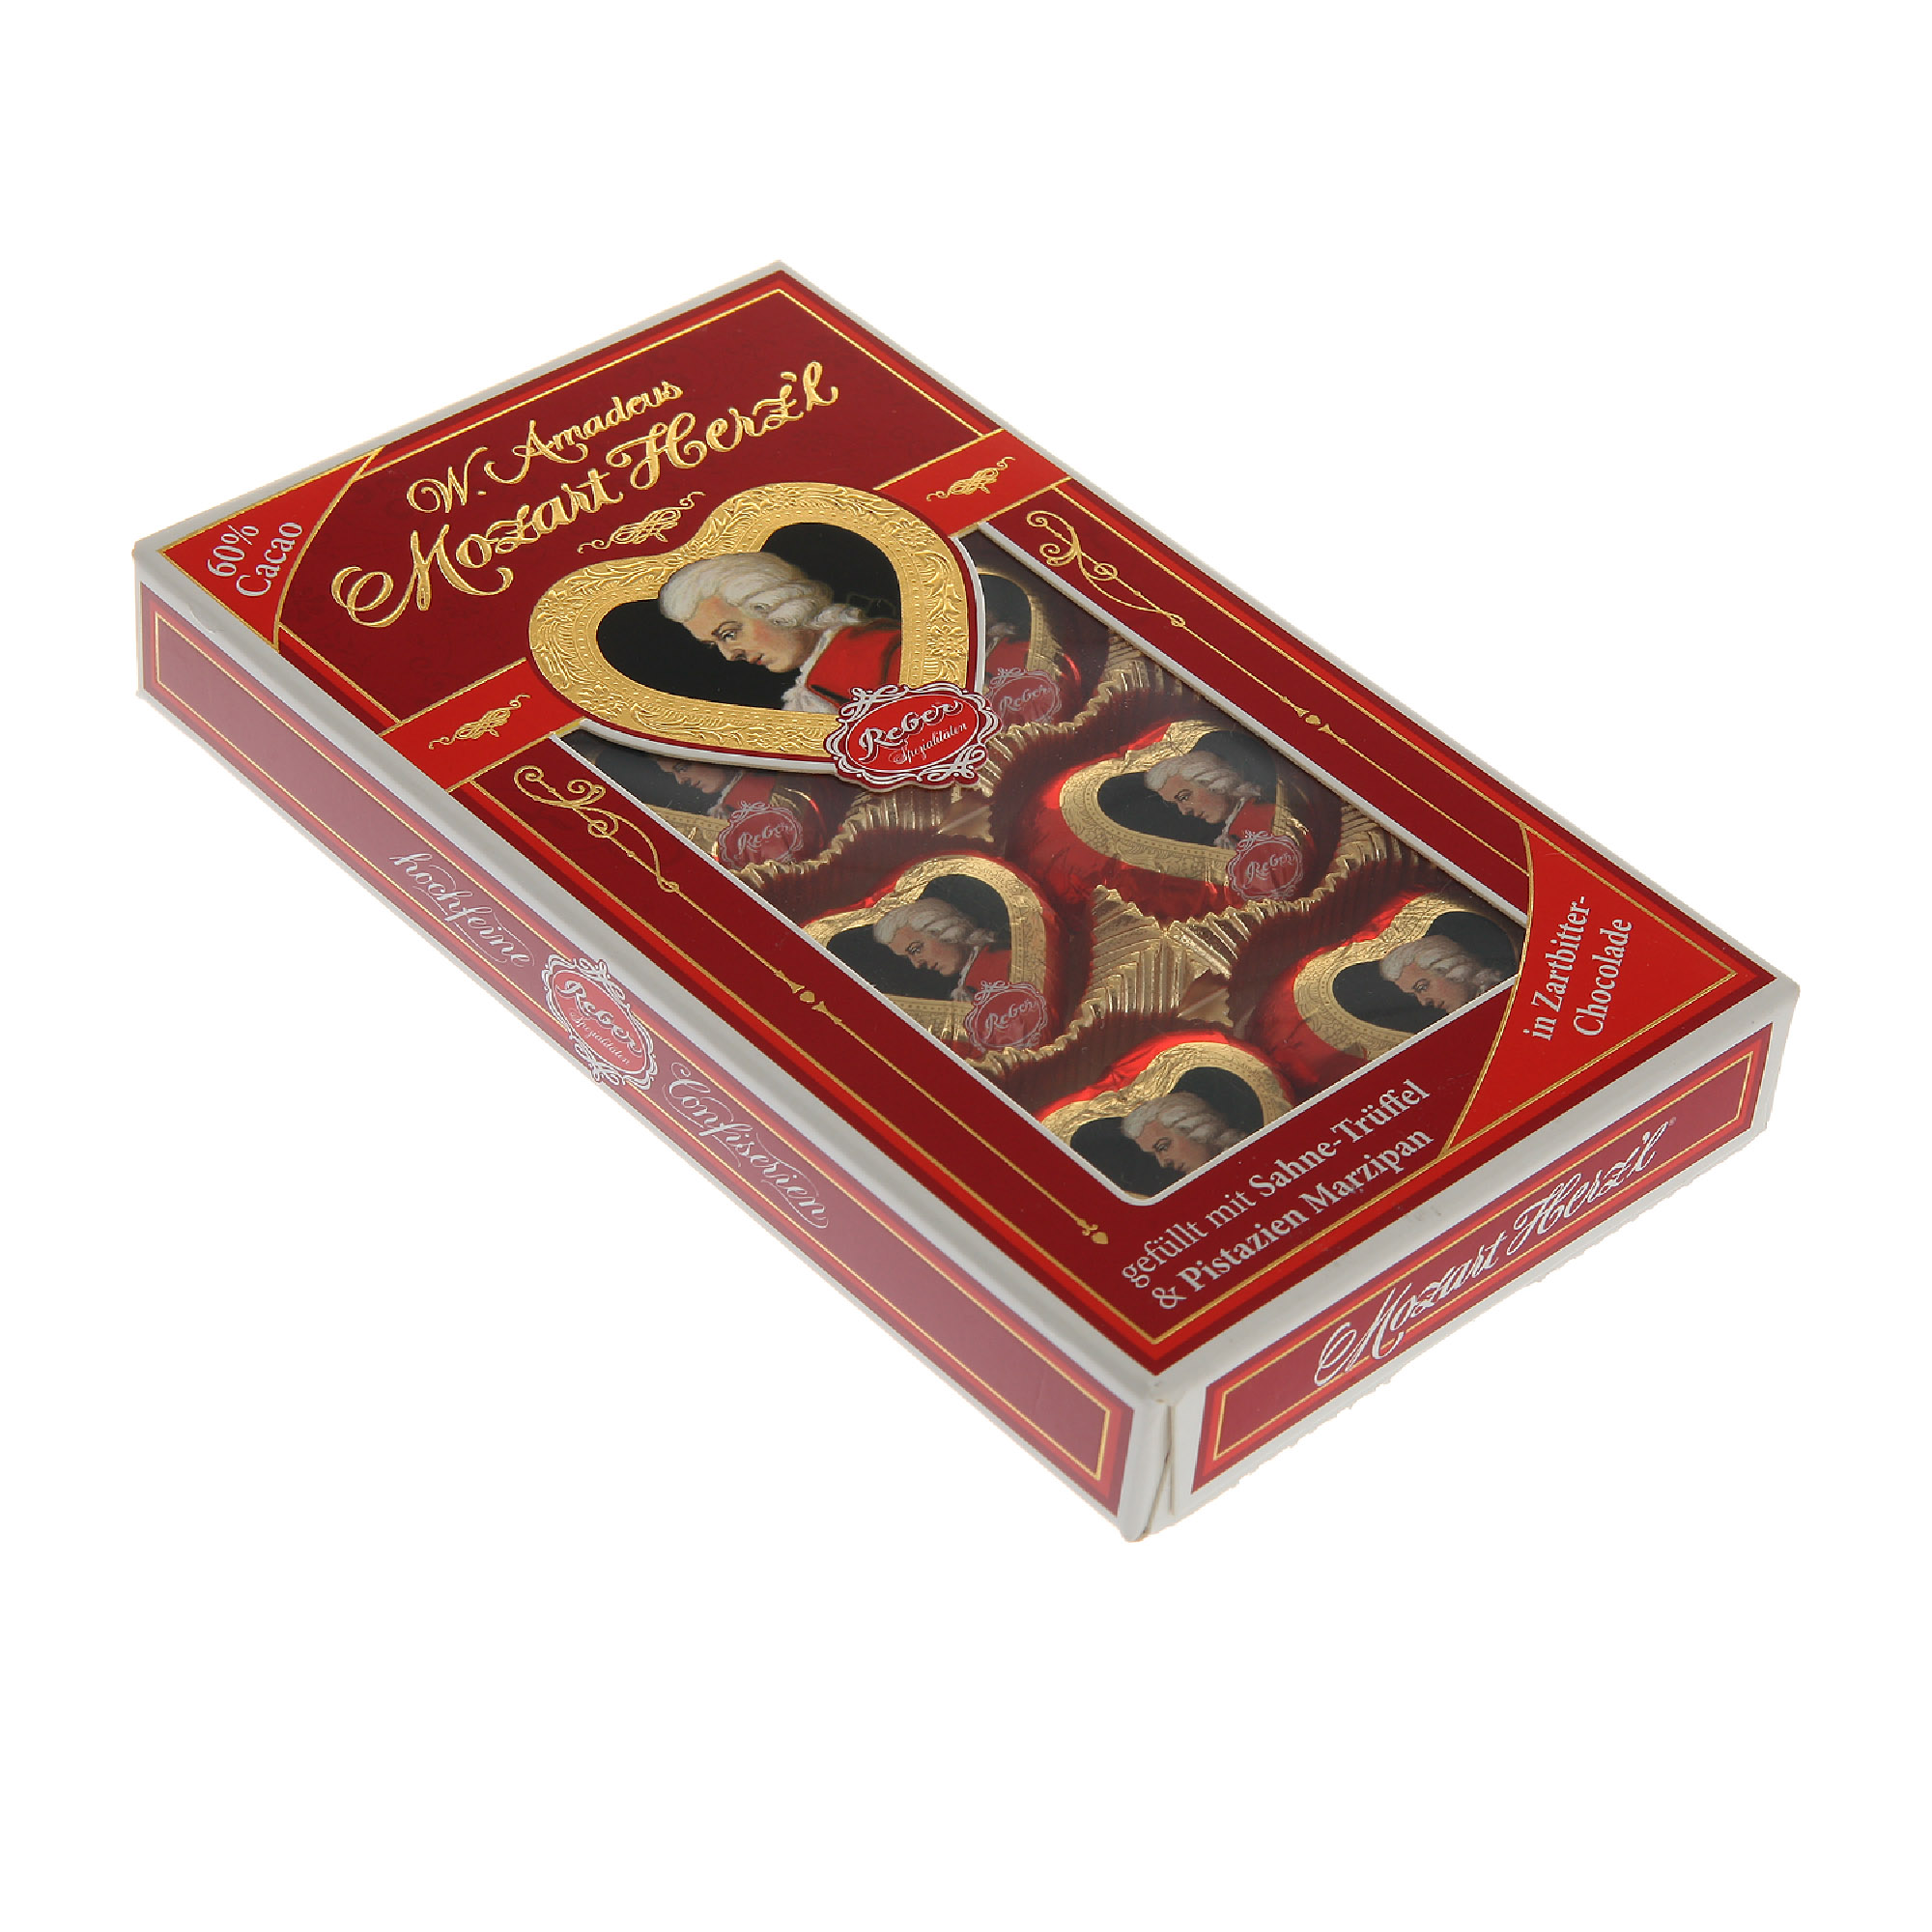 Набор конфет Reber Моцарт мини-сердечки 80 г набор конфет конфаэль подарок 80 г